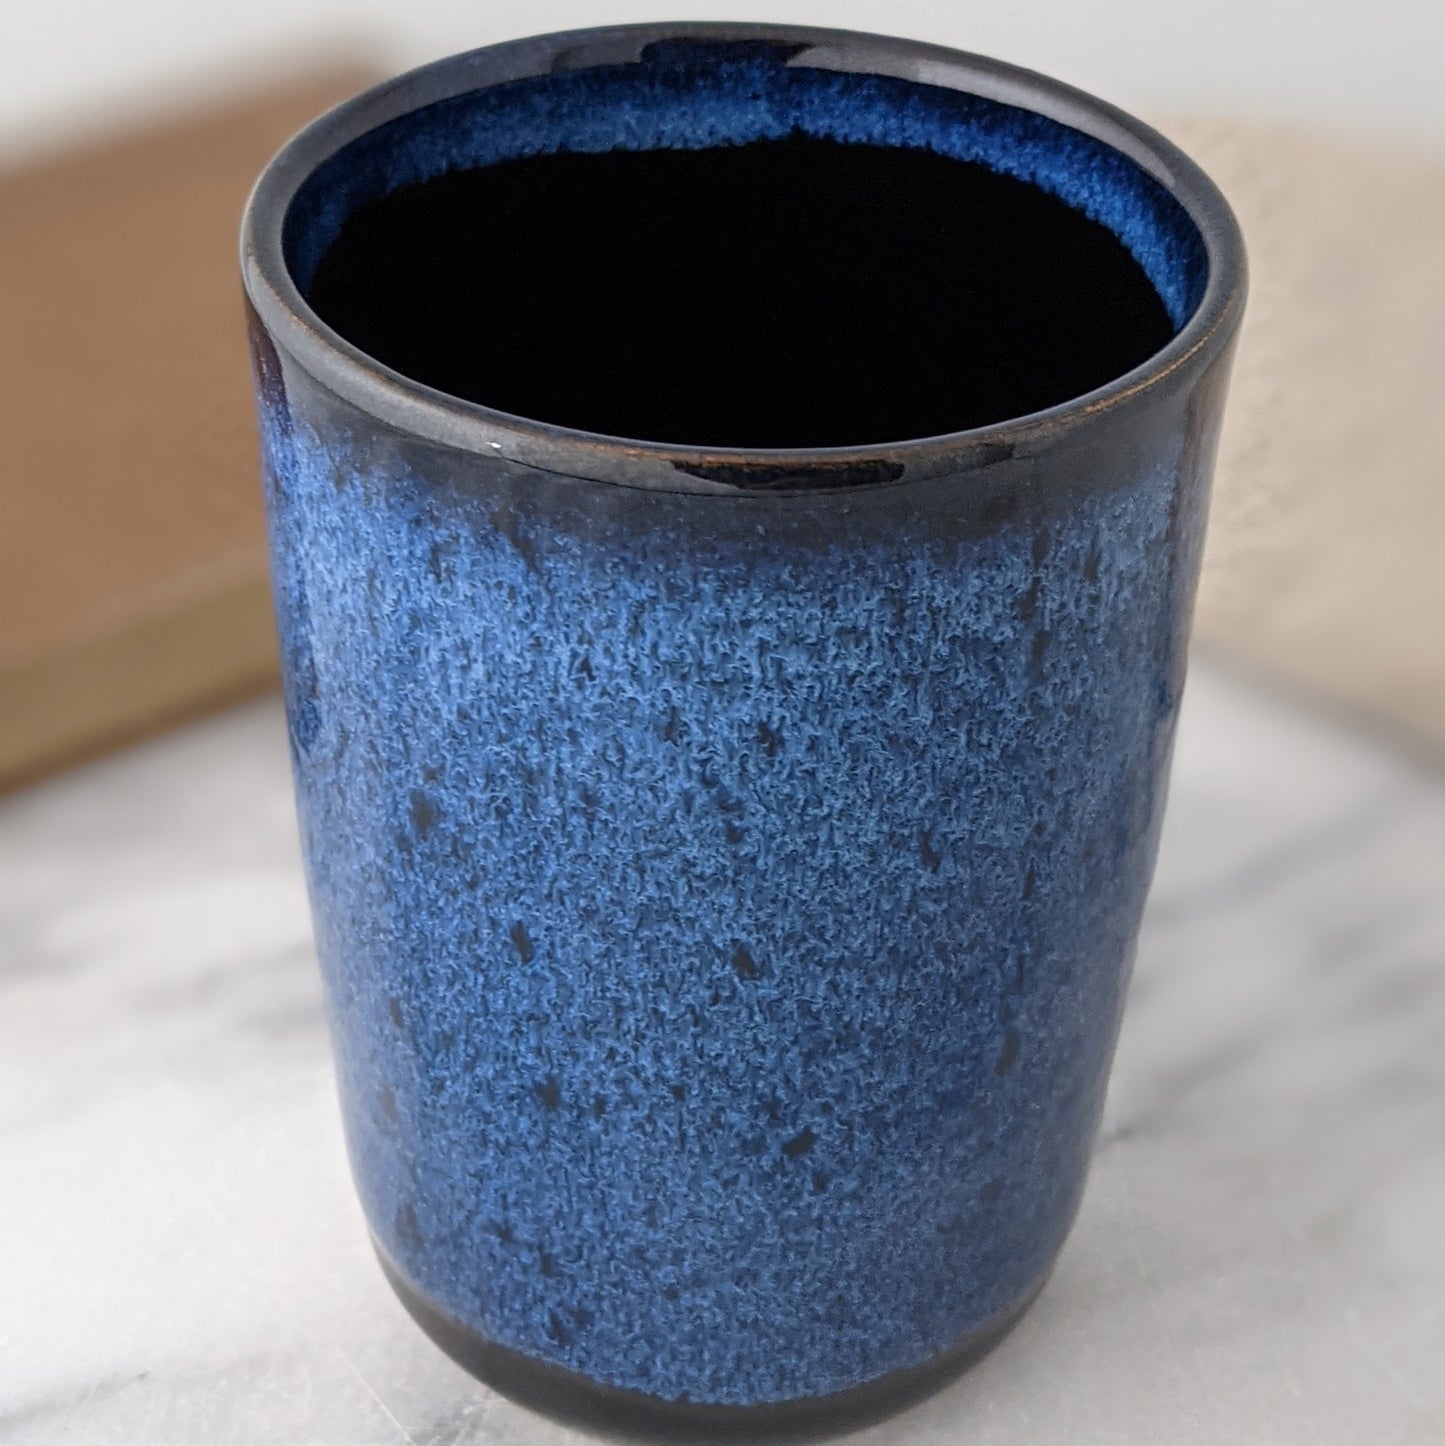 Blue & Black Travel Mug